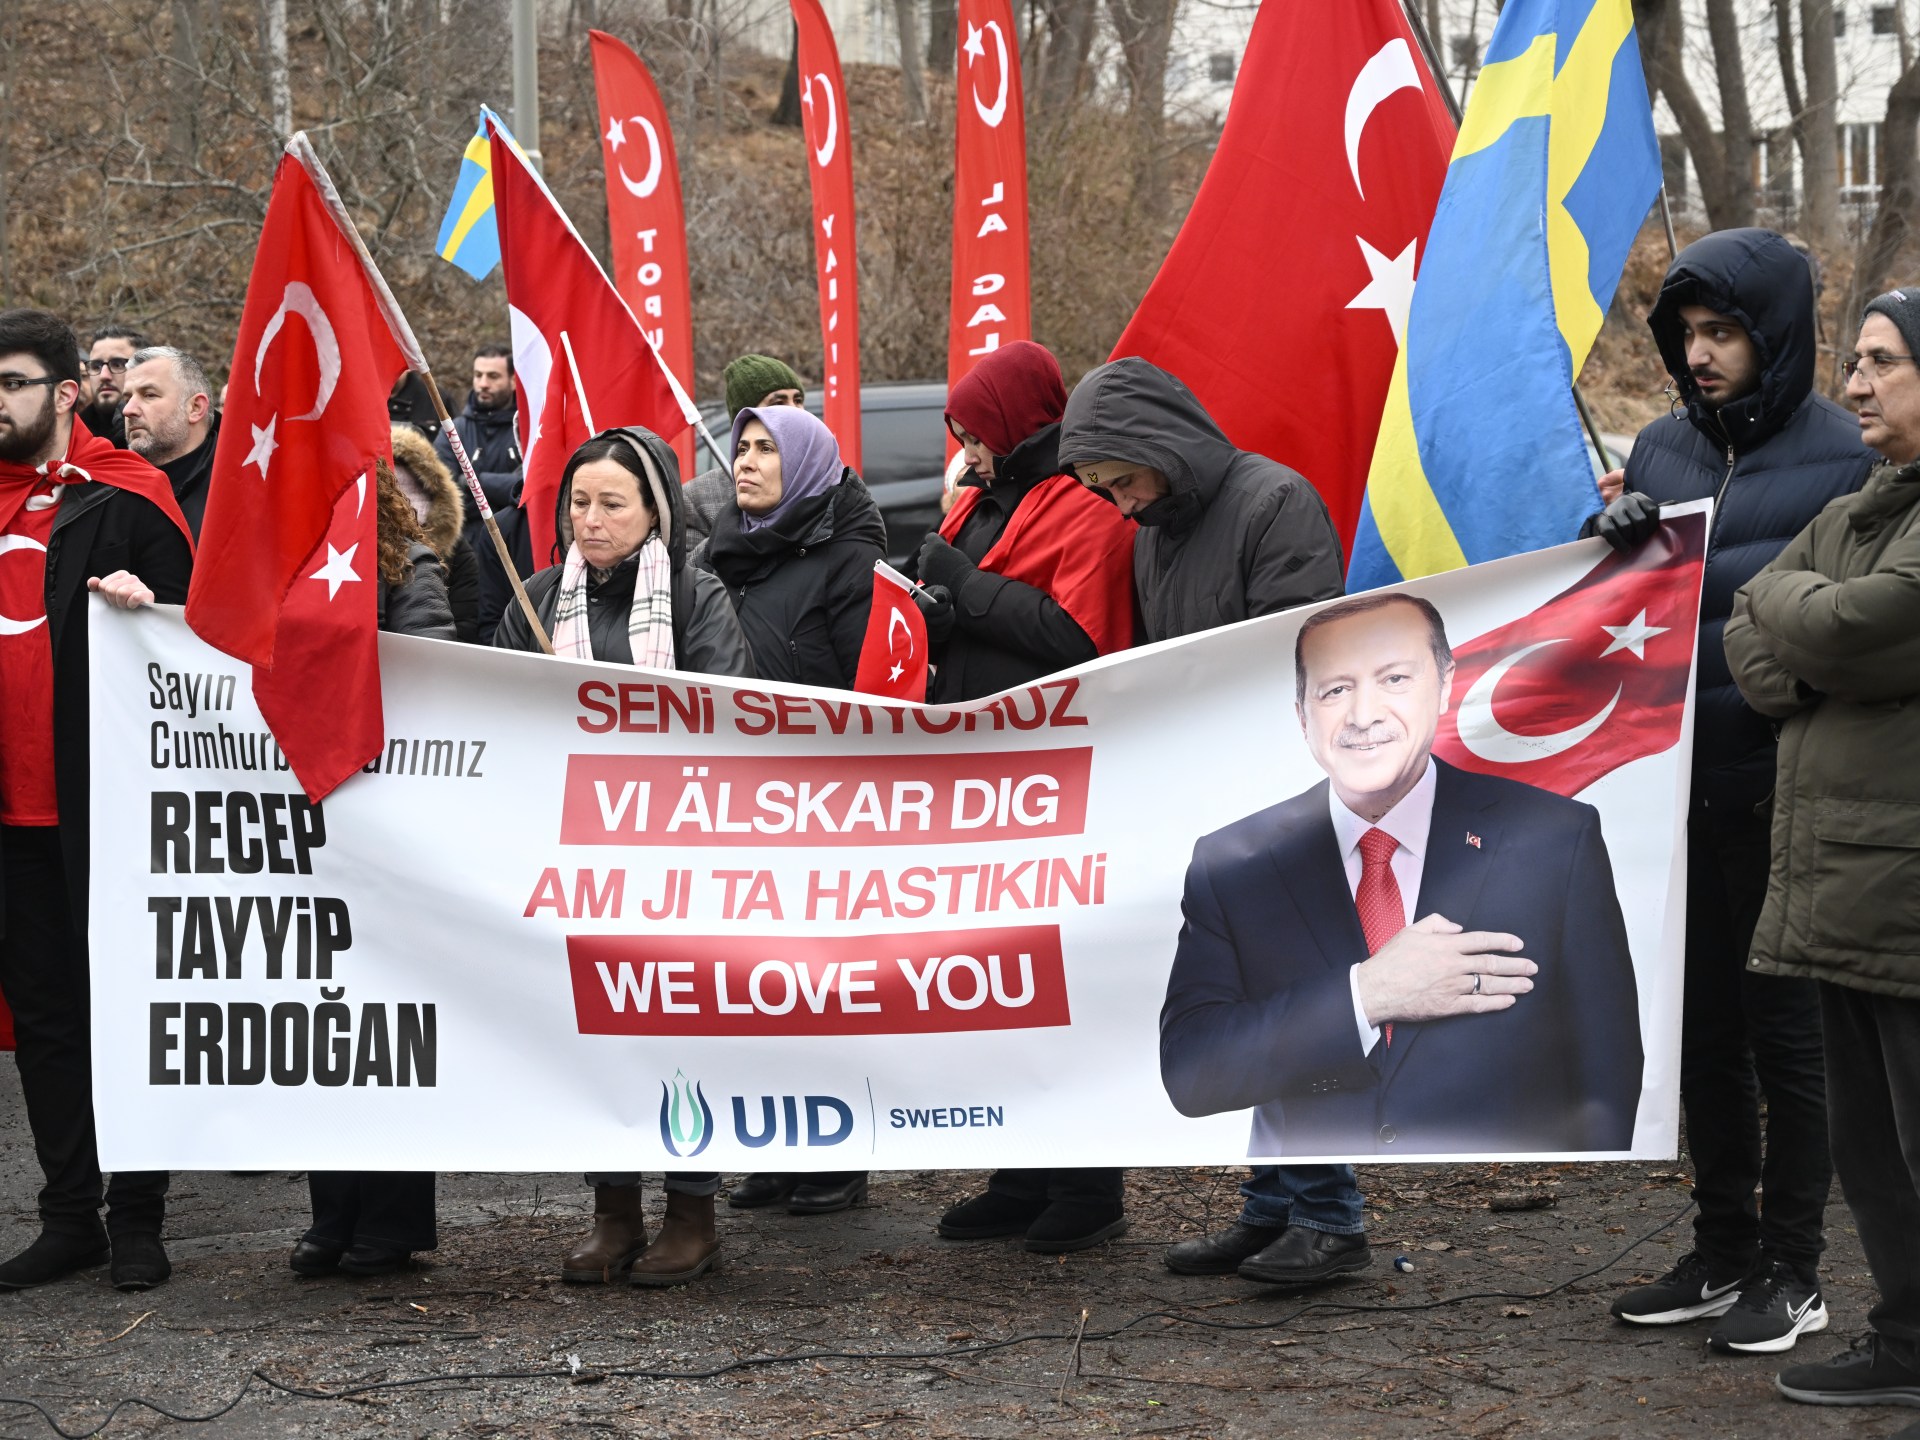 غضب تركي بعد حرق المصحف والتظاهرات الكردية في السويد |  أخبار عن الإسلاموفوبيا